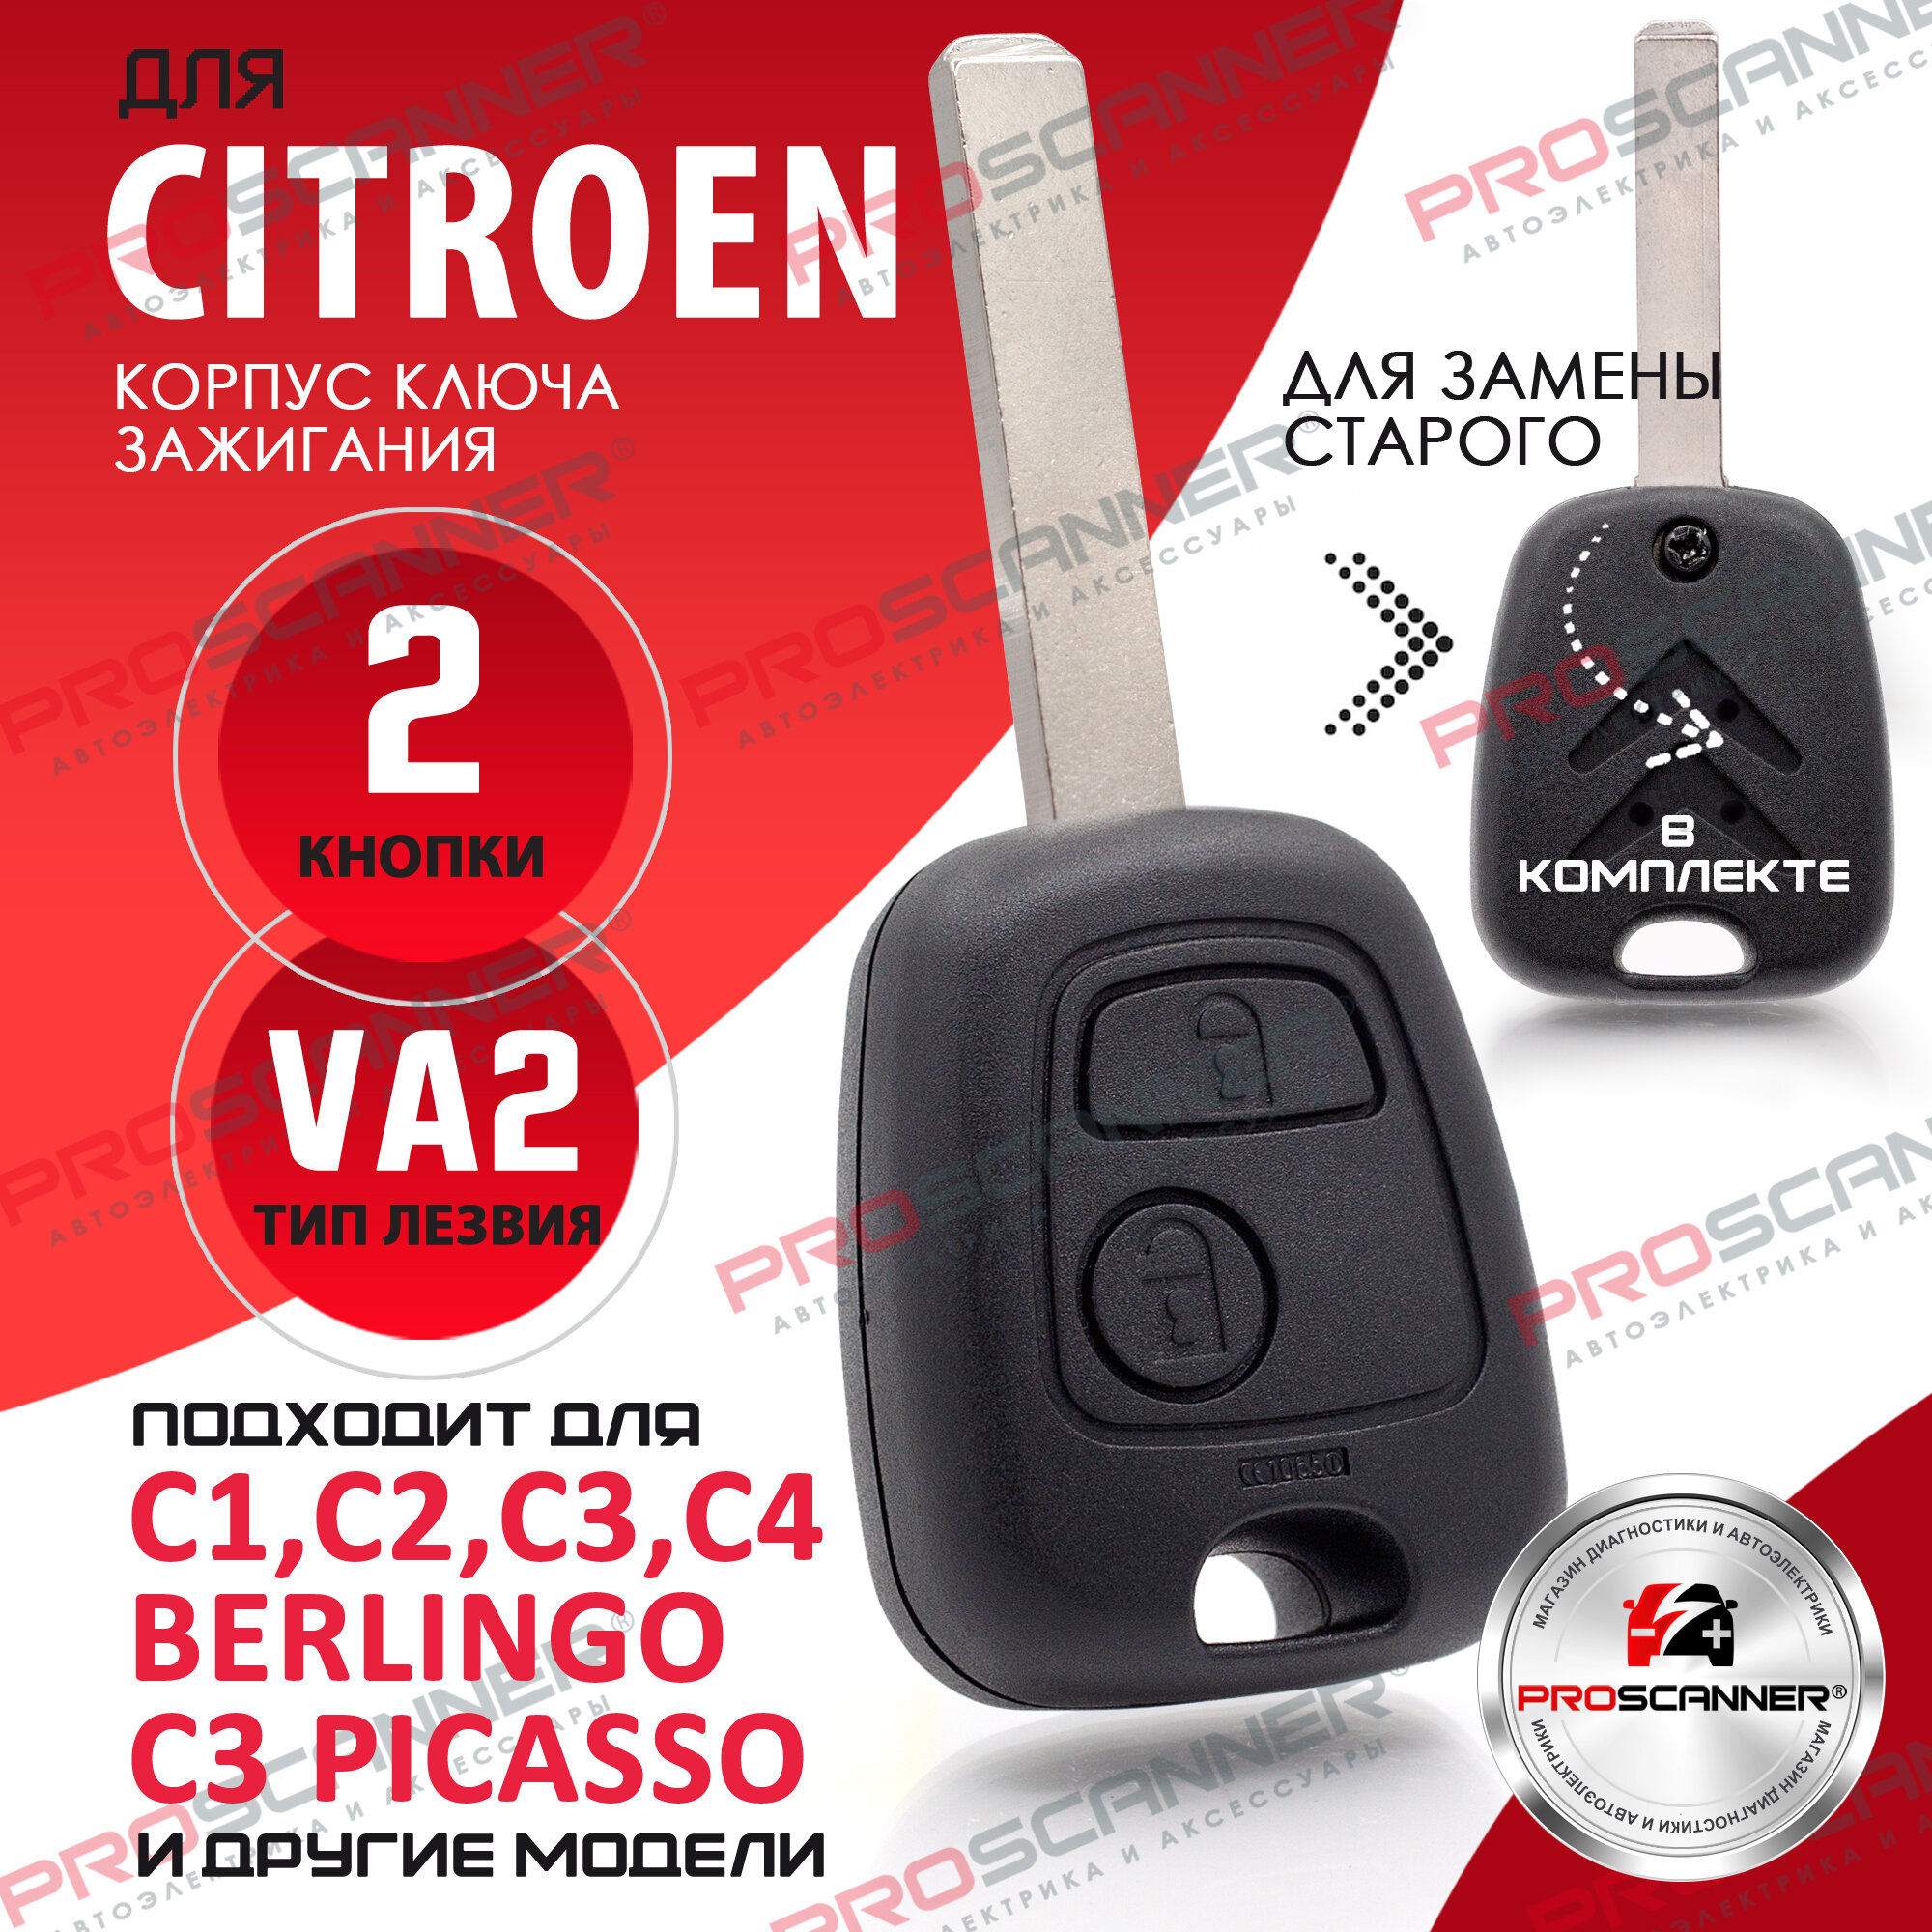 Корпус ключа зажигания для Citroen Ситроен C1 C2 C3 C4 Saxo Picasso Xsara Berlingo - 1 штука (2х кнопочный ключ лезвие VA2)